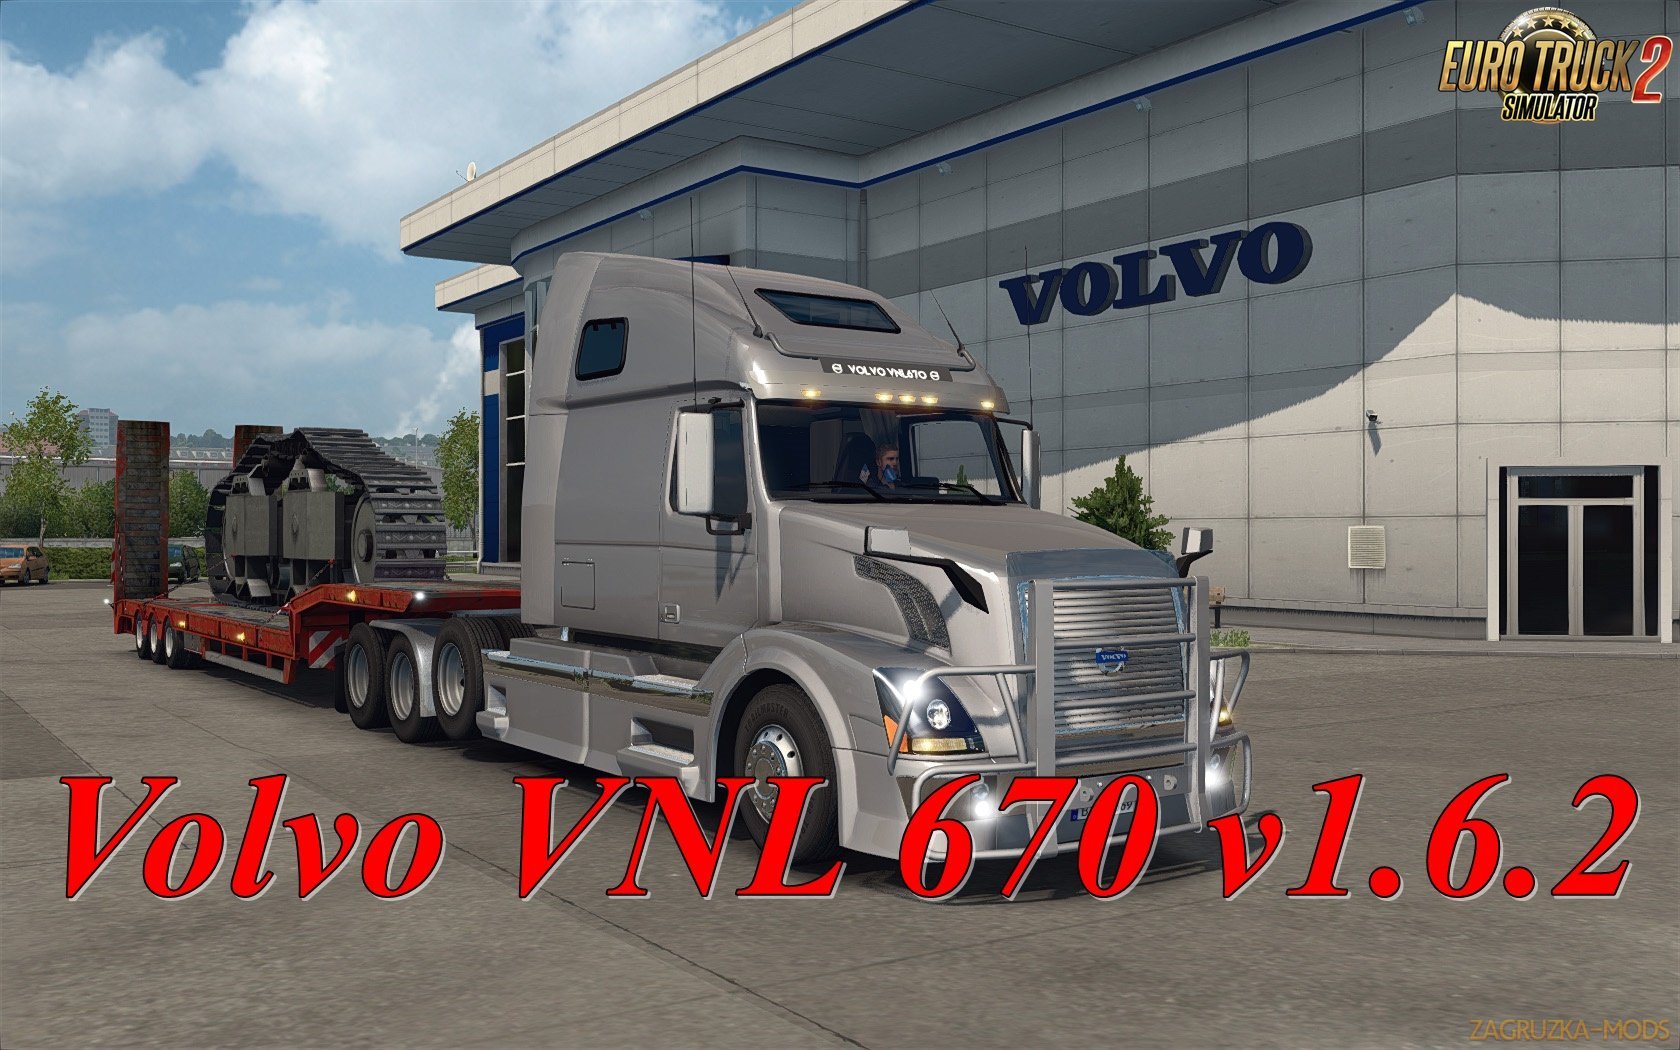 Volvo VNL 670 v1.6.2 by Aradeth [1.33.x]